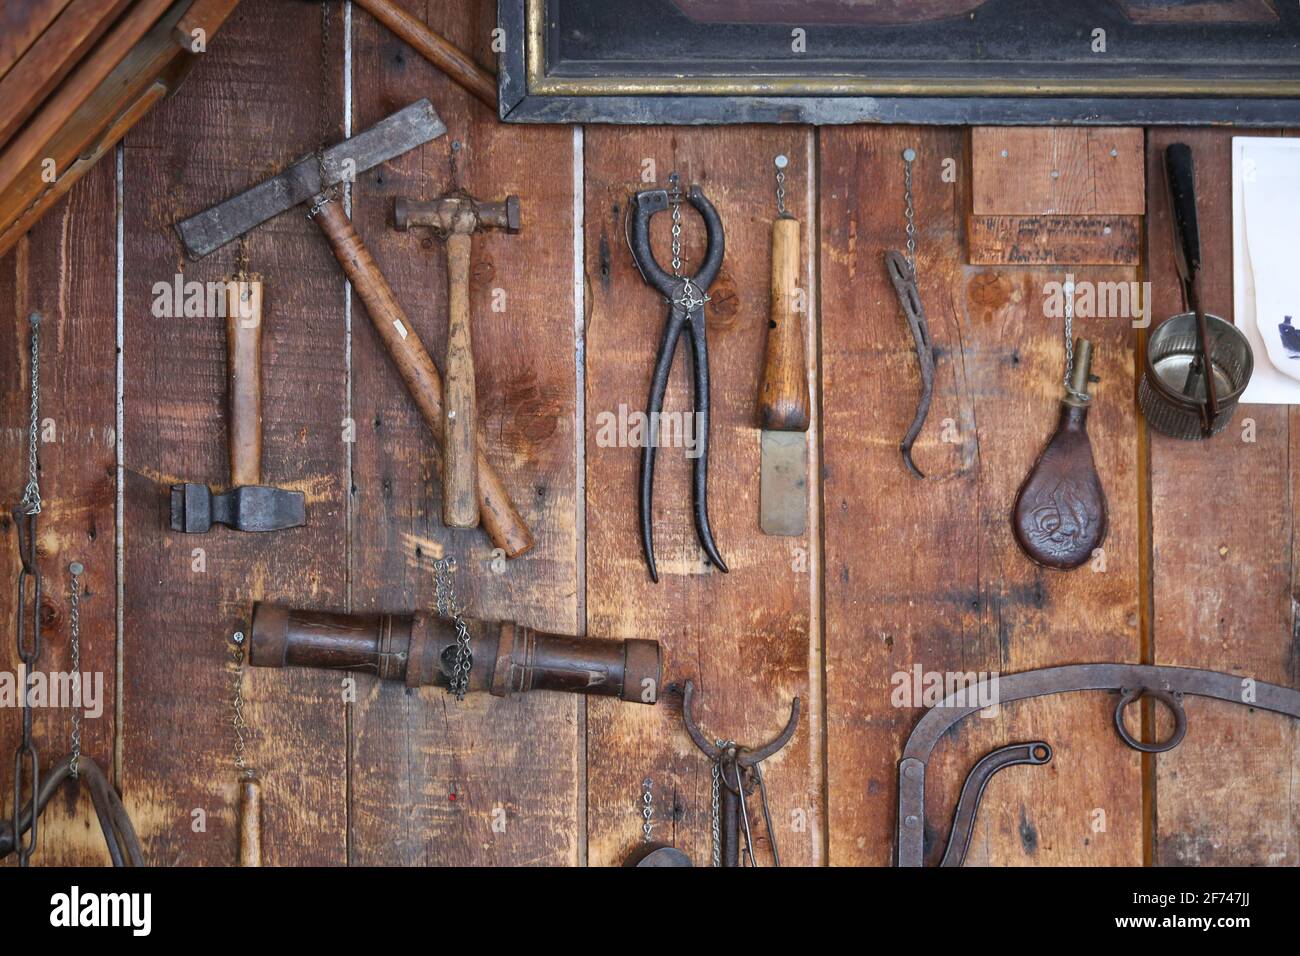 Rustikales Land alte antike Metall-Farm Werkzeuge einschließlich Hammer, Eisenklemme, Tasse, und rostigen handwerklichen Gegenstände hängen an einer alten Holz Scheune Schuppen Wand Stockfoto